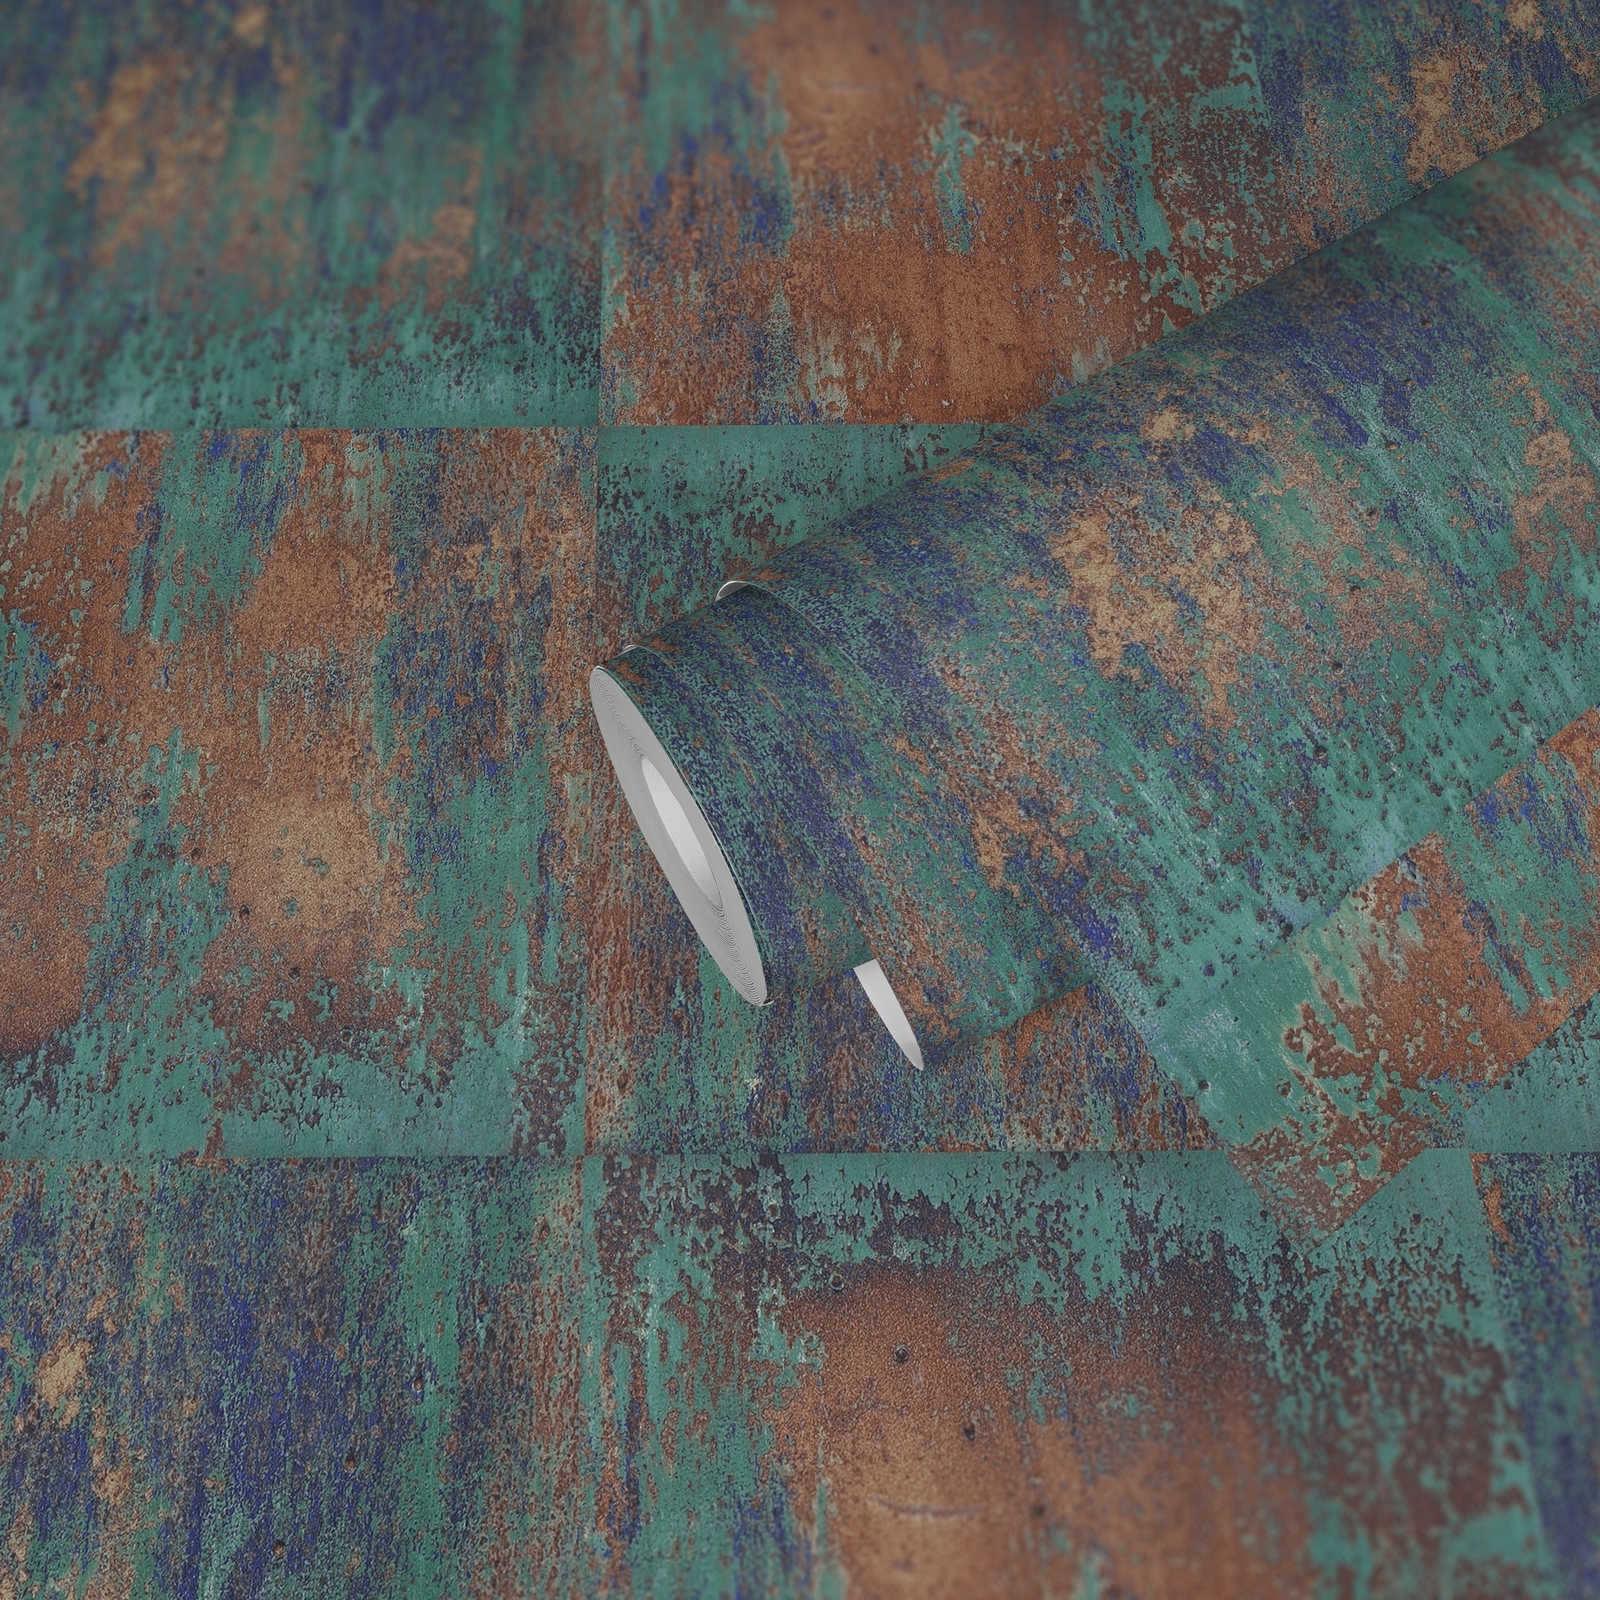             Papier peint adhésif | aspect rouille design métal rustique - bleu, marron
        